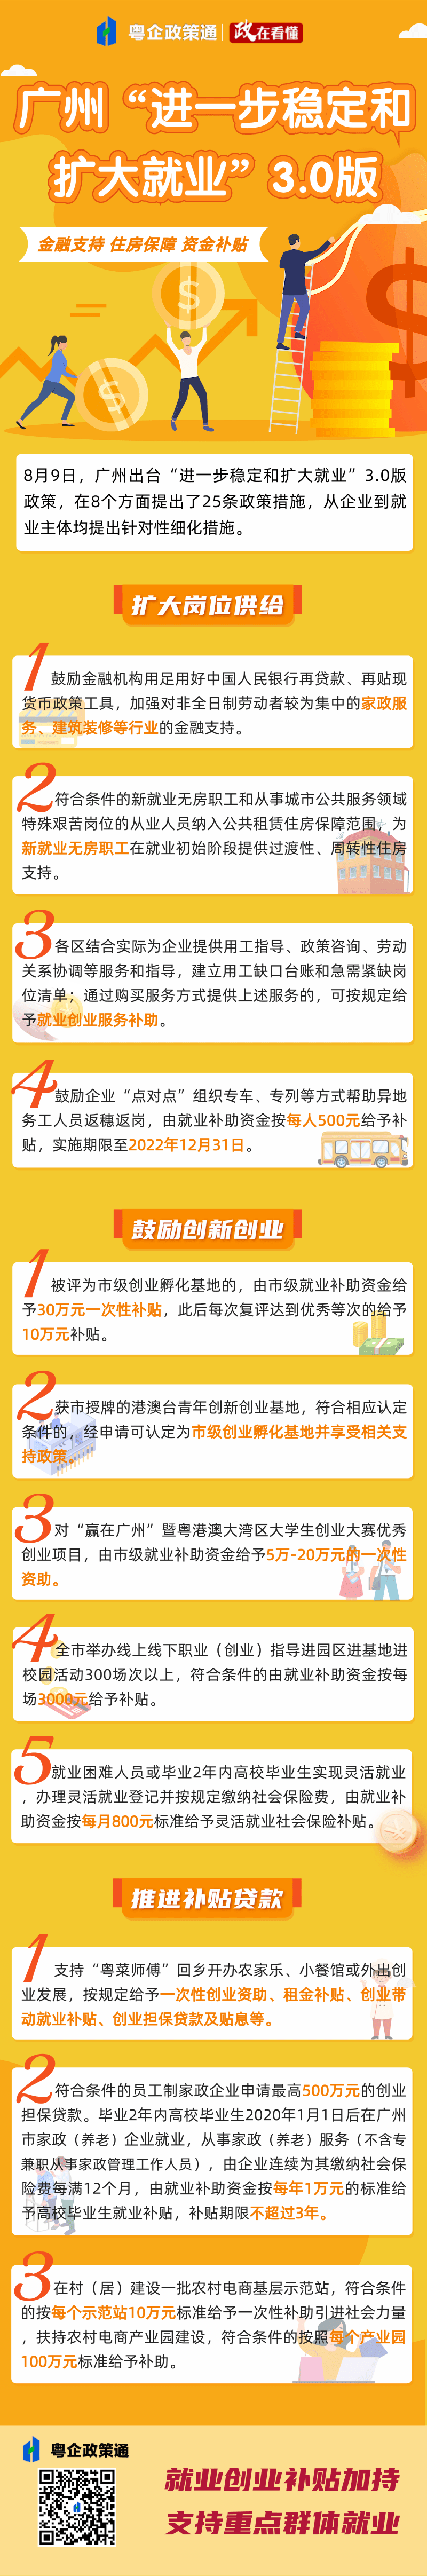 橙色证券从业课程培训长图海报 (1).png